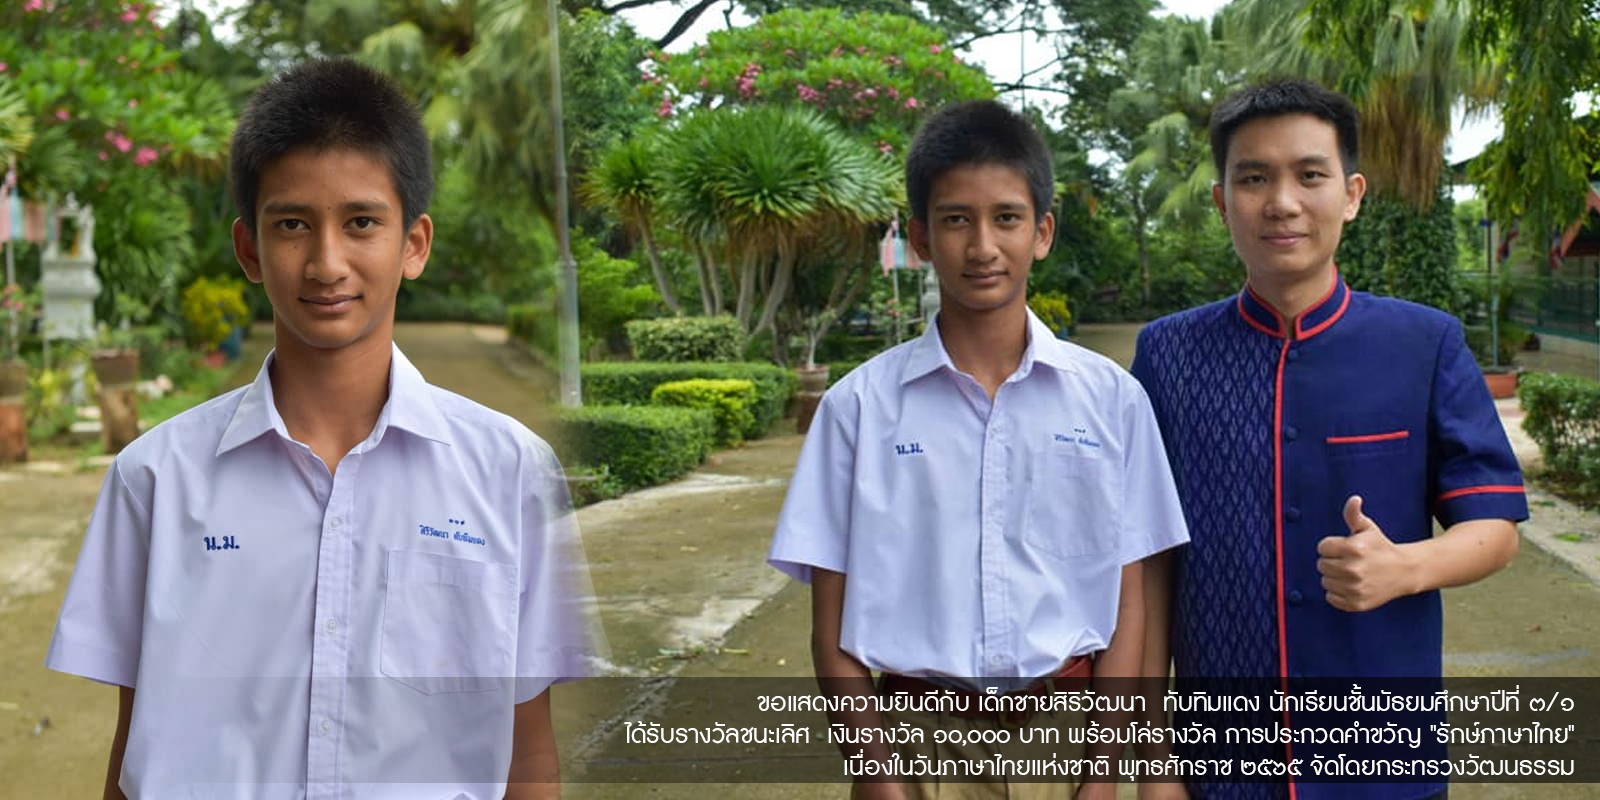 ขอแสดงความยินดีกับ เด็กชายสิริวัฒนา ทับทิมแดง นักเรียนชั้นมัธยมศึกษาปีที่ ๓/๑ ได้รับรางวัลชนะเลิศ เงินรางวัล ๑๐,๐๐๐ บาท พร้อมโล่รางวัล การประกวดคำขวัญ "รักษ์ภาษาไทย" เนื่องในวันภาษาไทยแห่งชาติ พุทธศักราช ๒๕๖๕ จัดโดยกระทรวงวัฒนธรรม